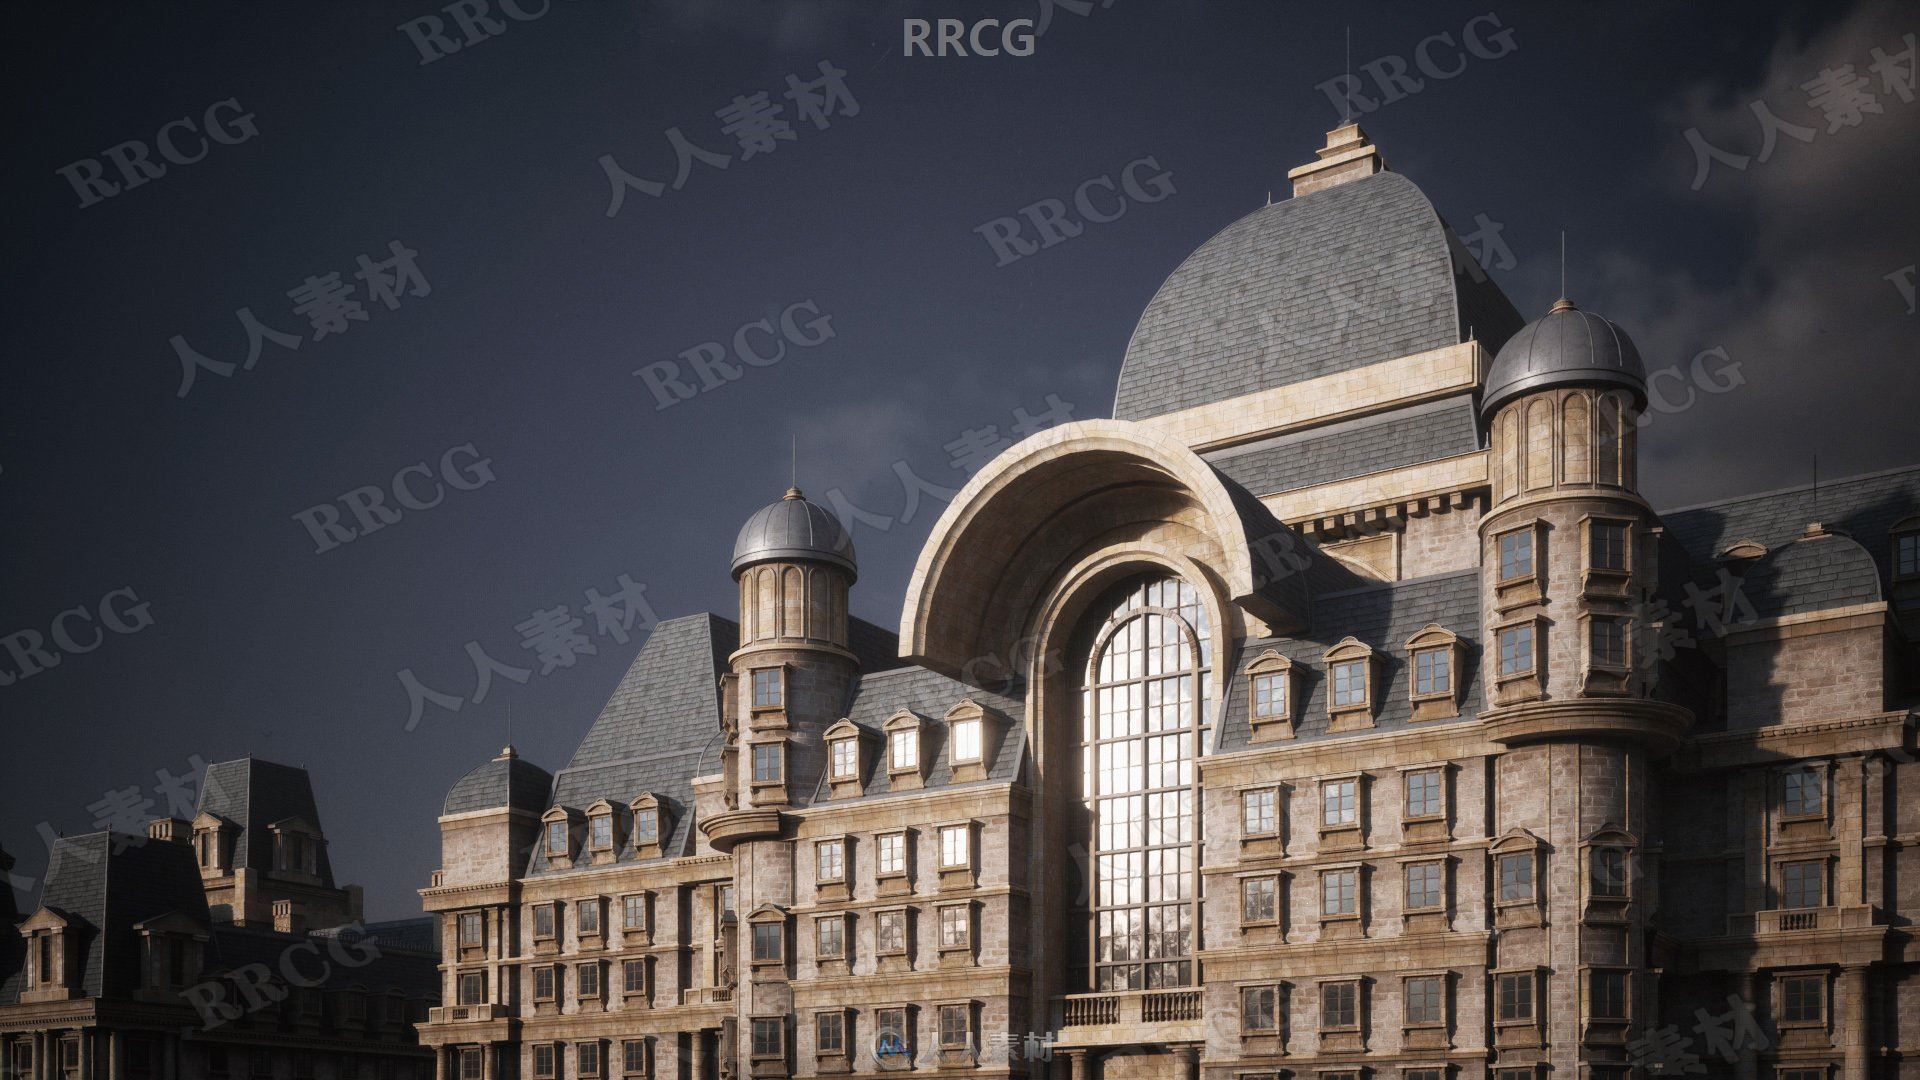 新古典主义风格巴黎伦敦欧洲建筑景观3D模型合集